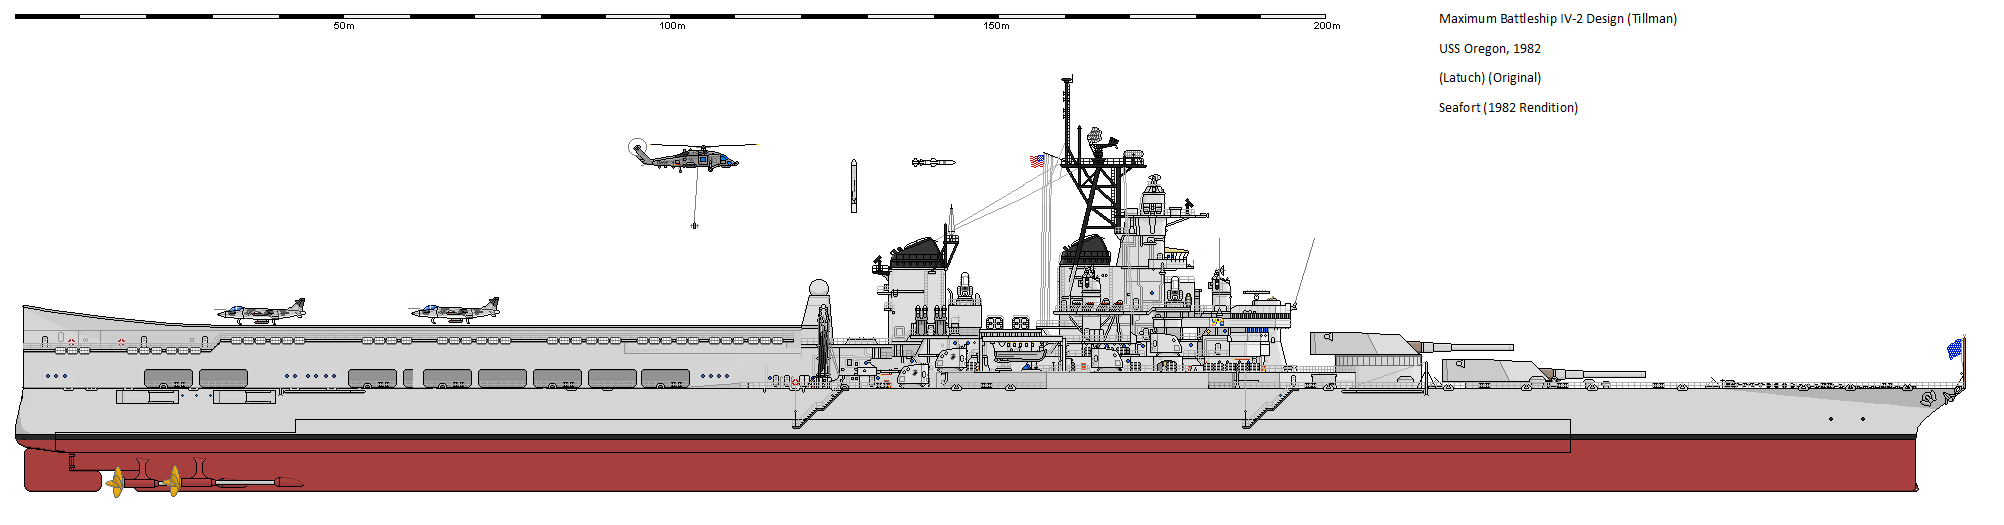 USS Oregon (Tillman Battleship) 1981.png